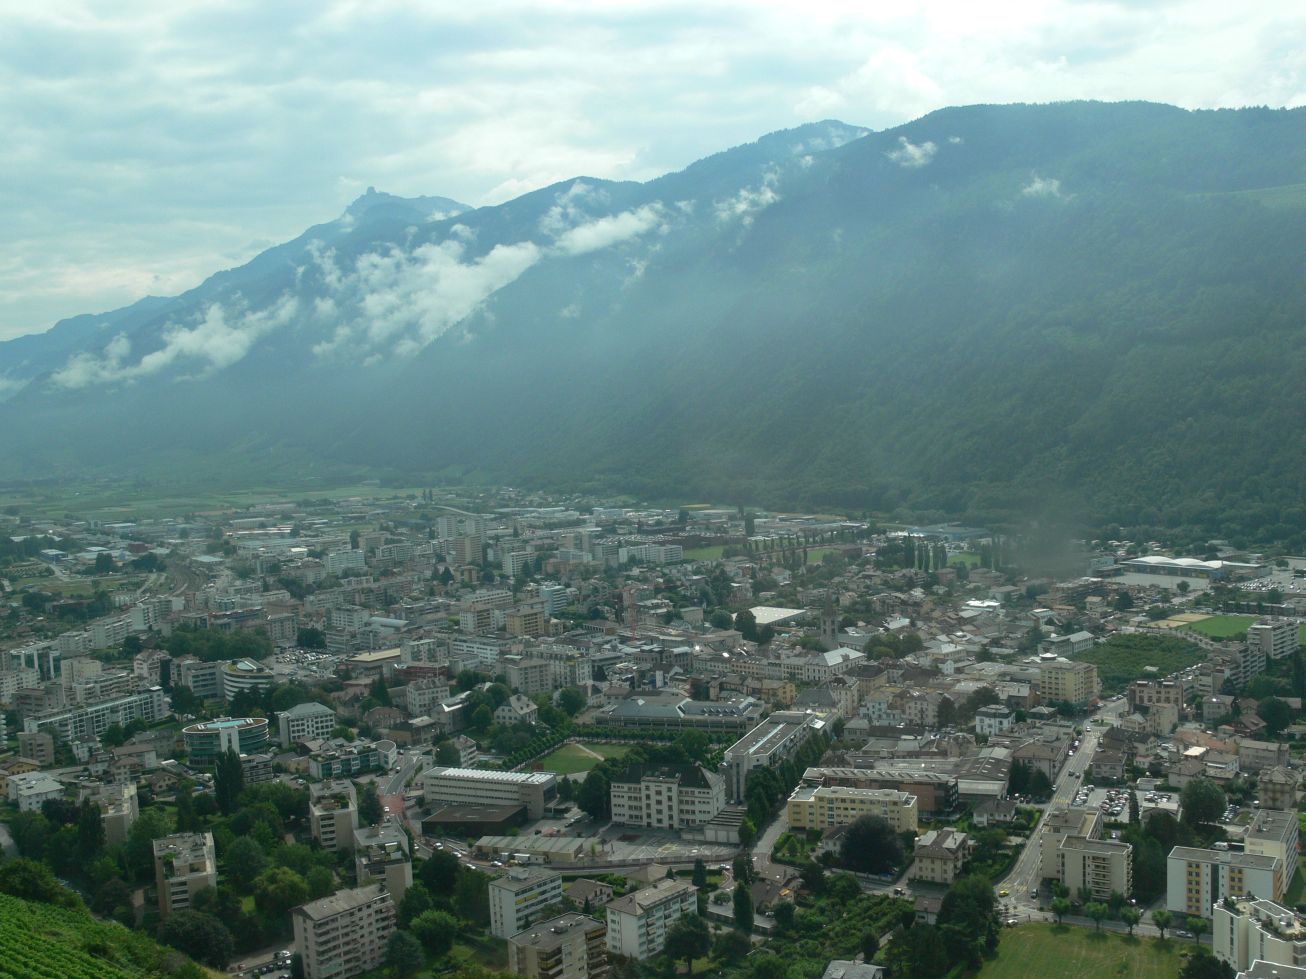 4. Švýcarské město Martigny
